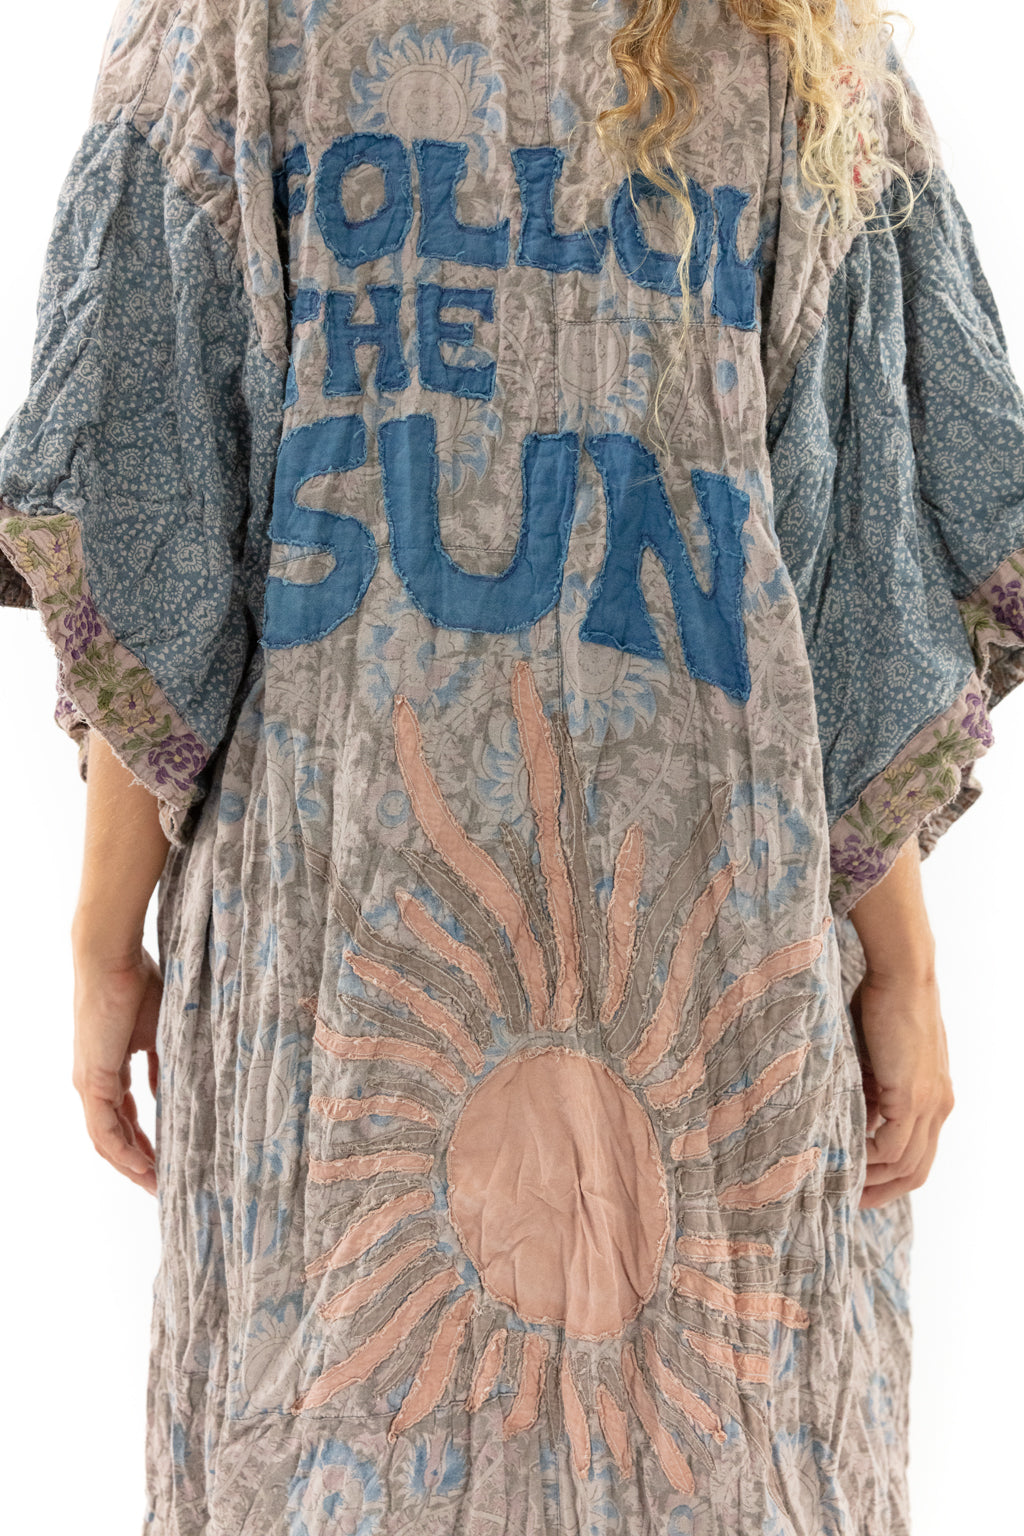 Follow the Sun Sinchu Kimono - Tessa